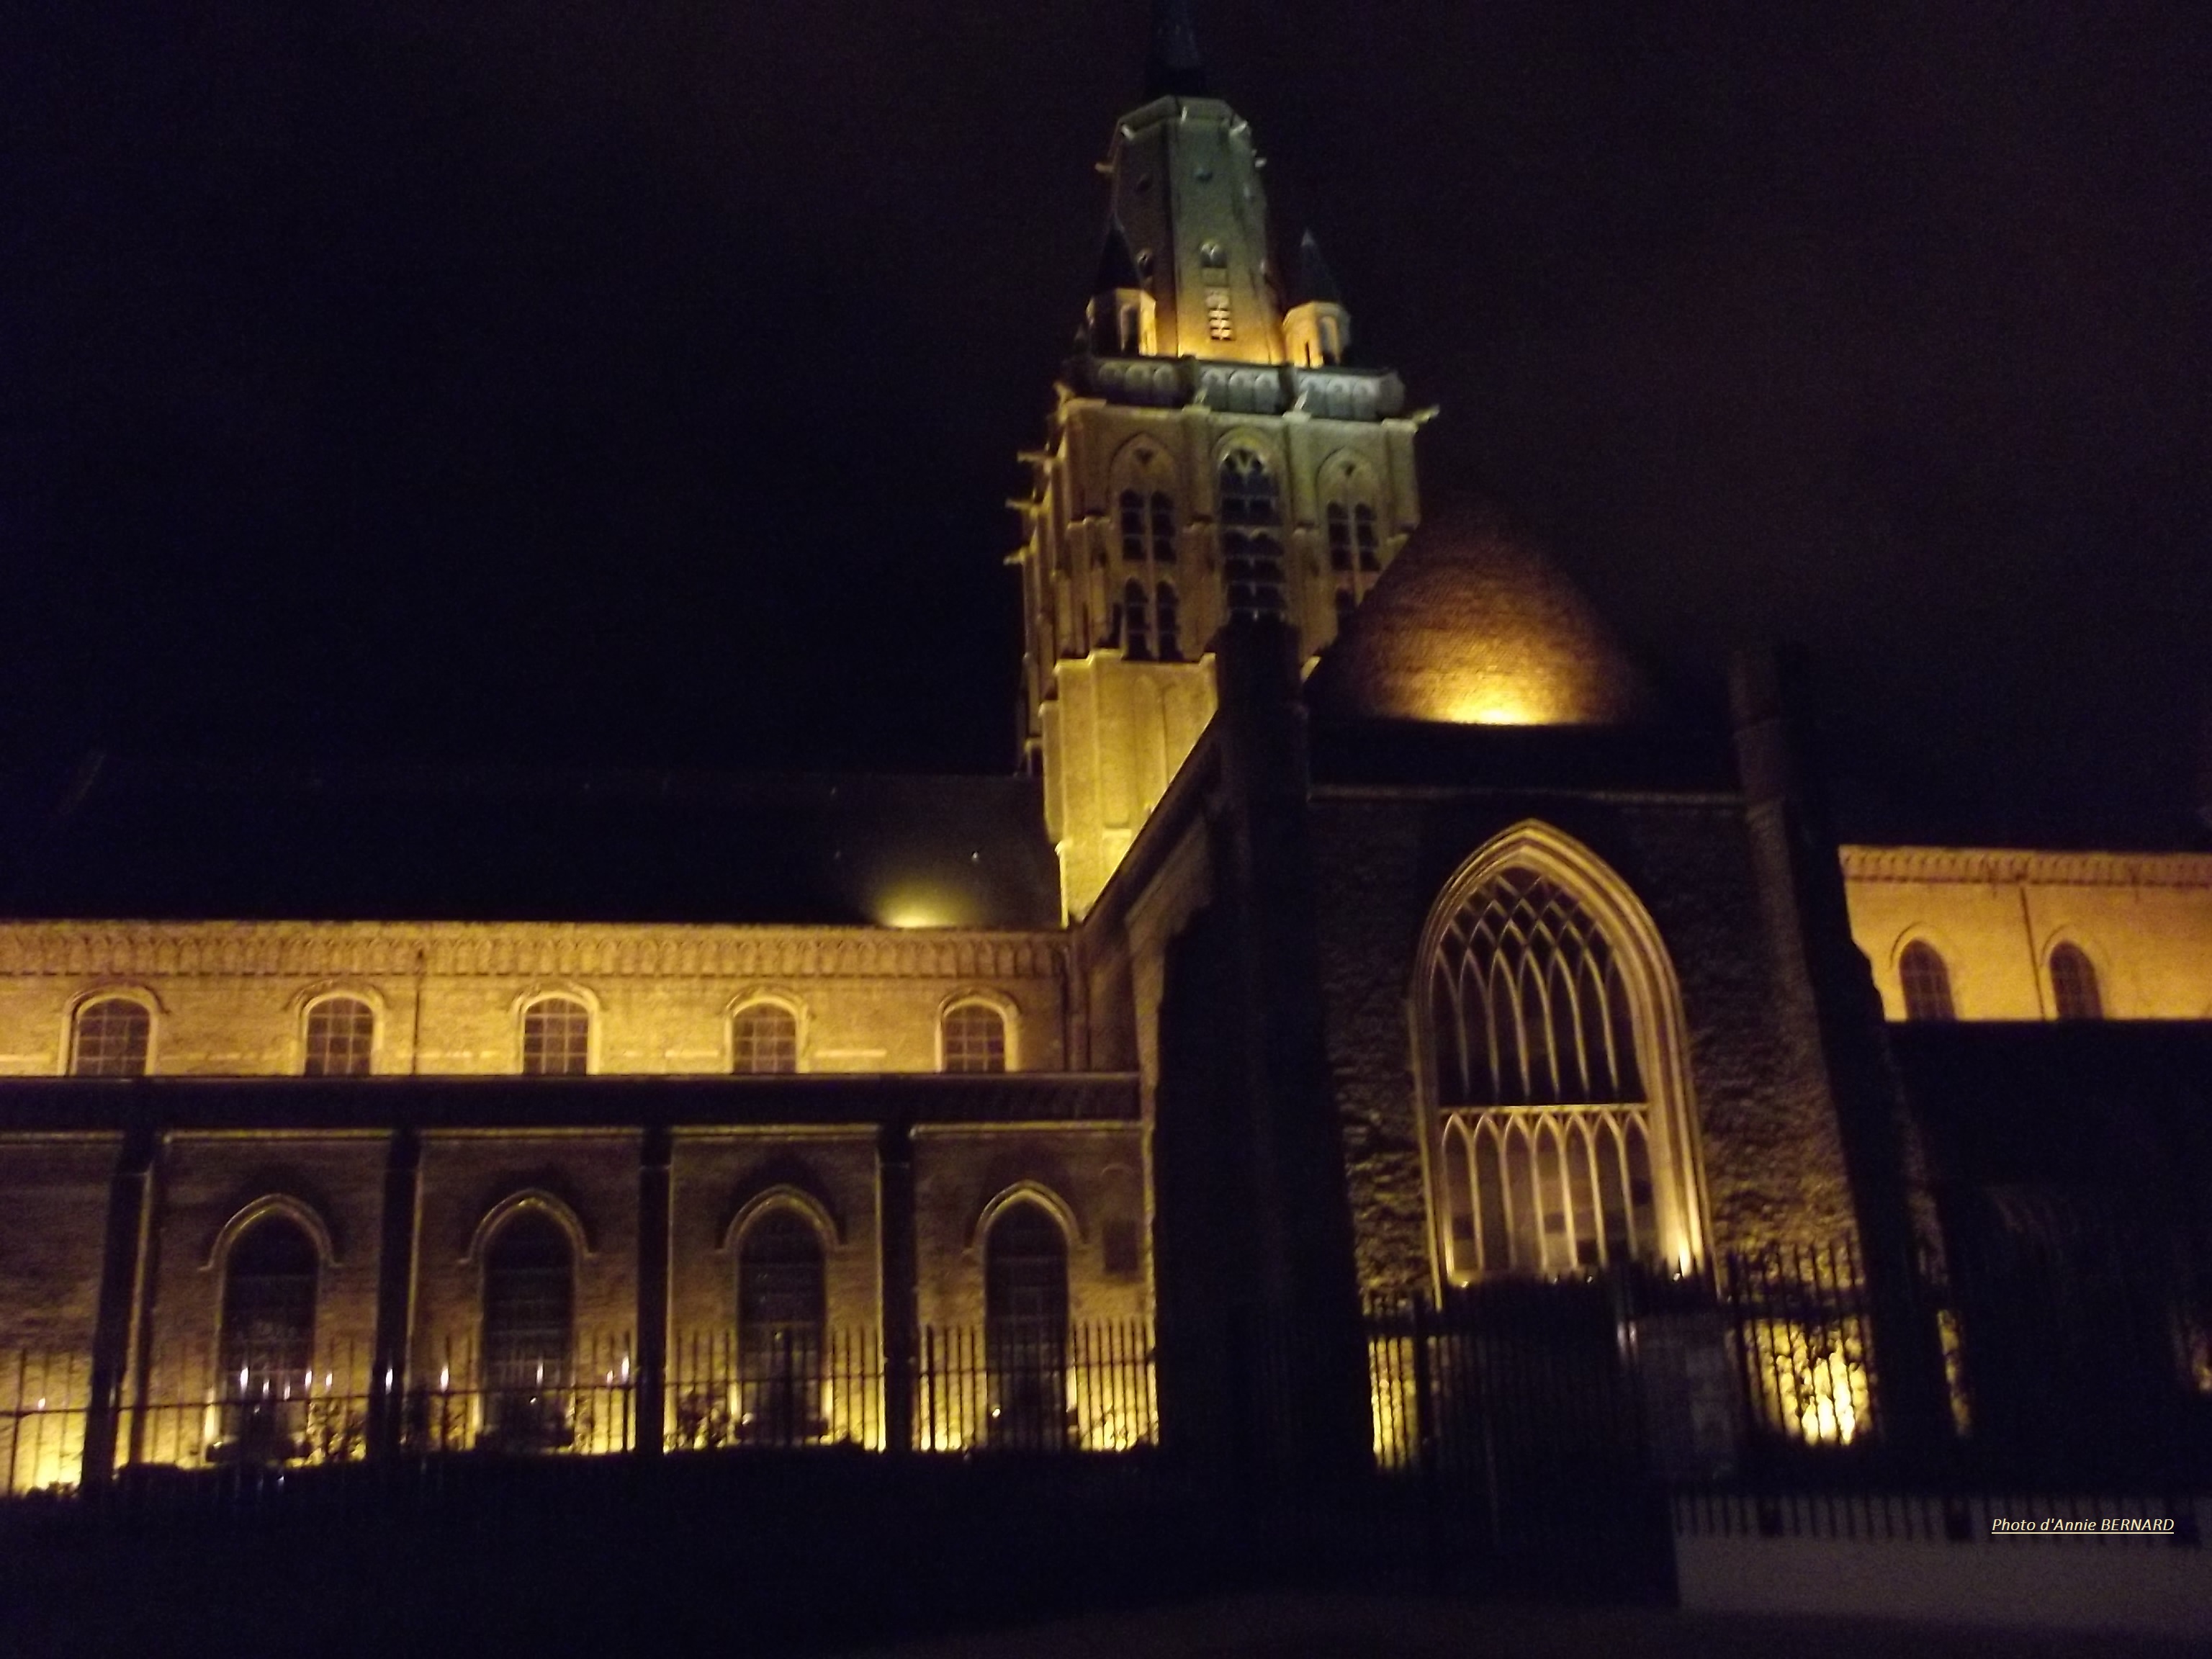 Eglise Notre-Dame de nuit à Calais